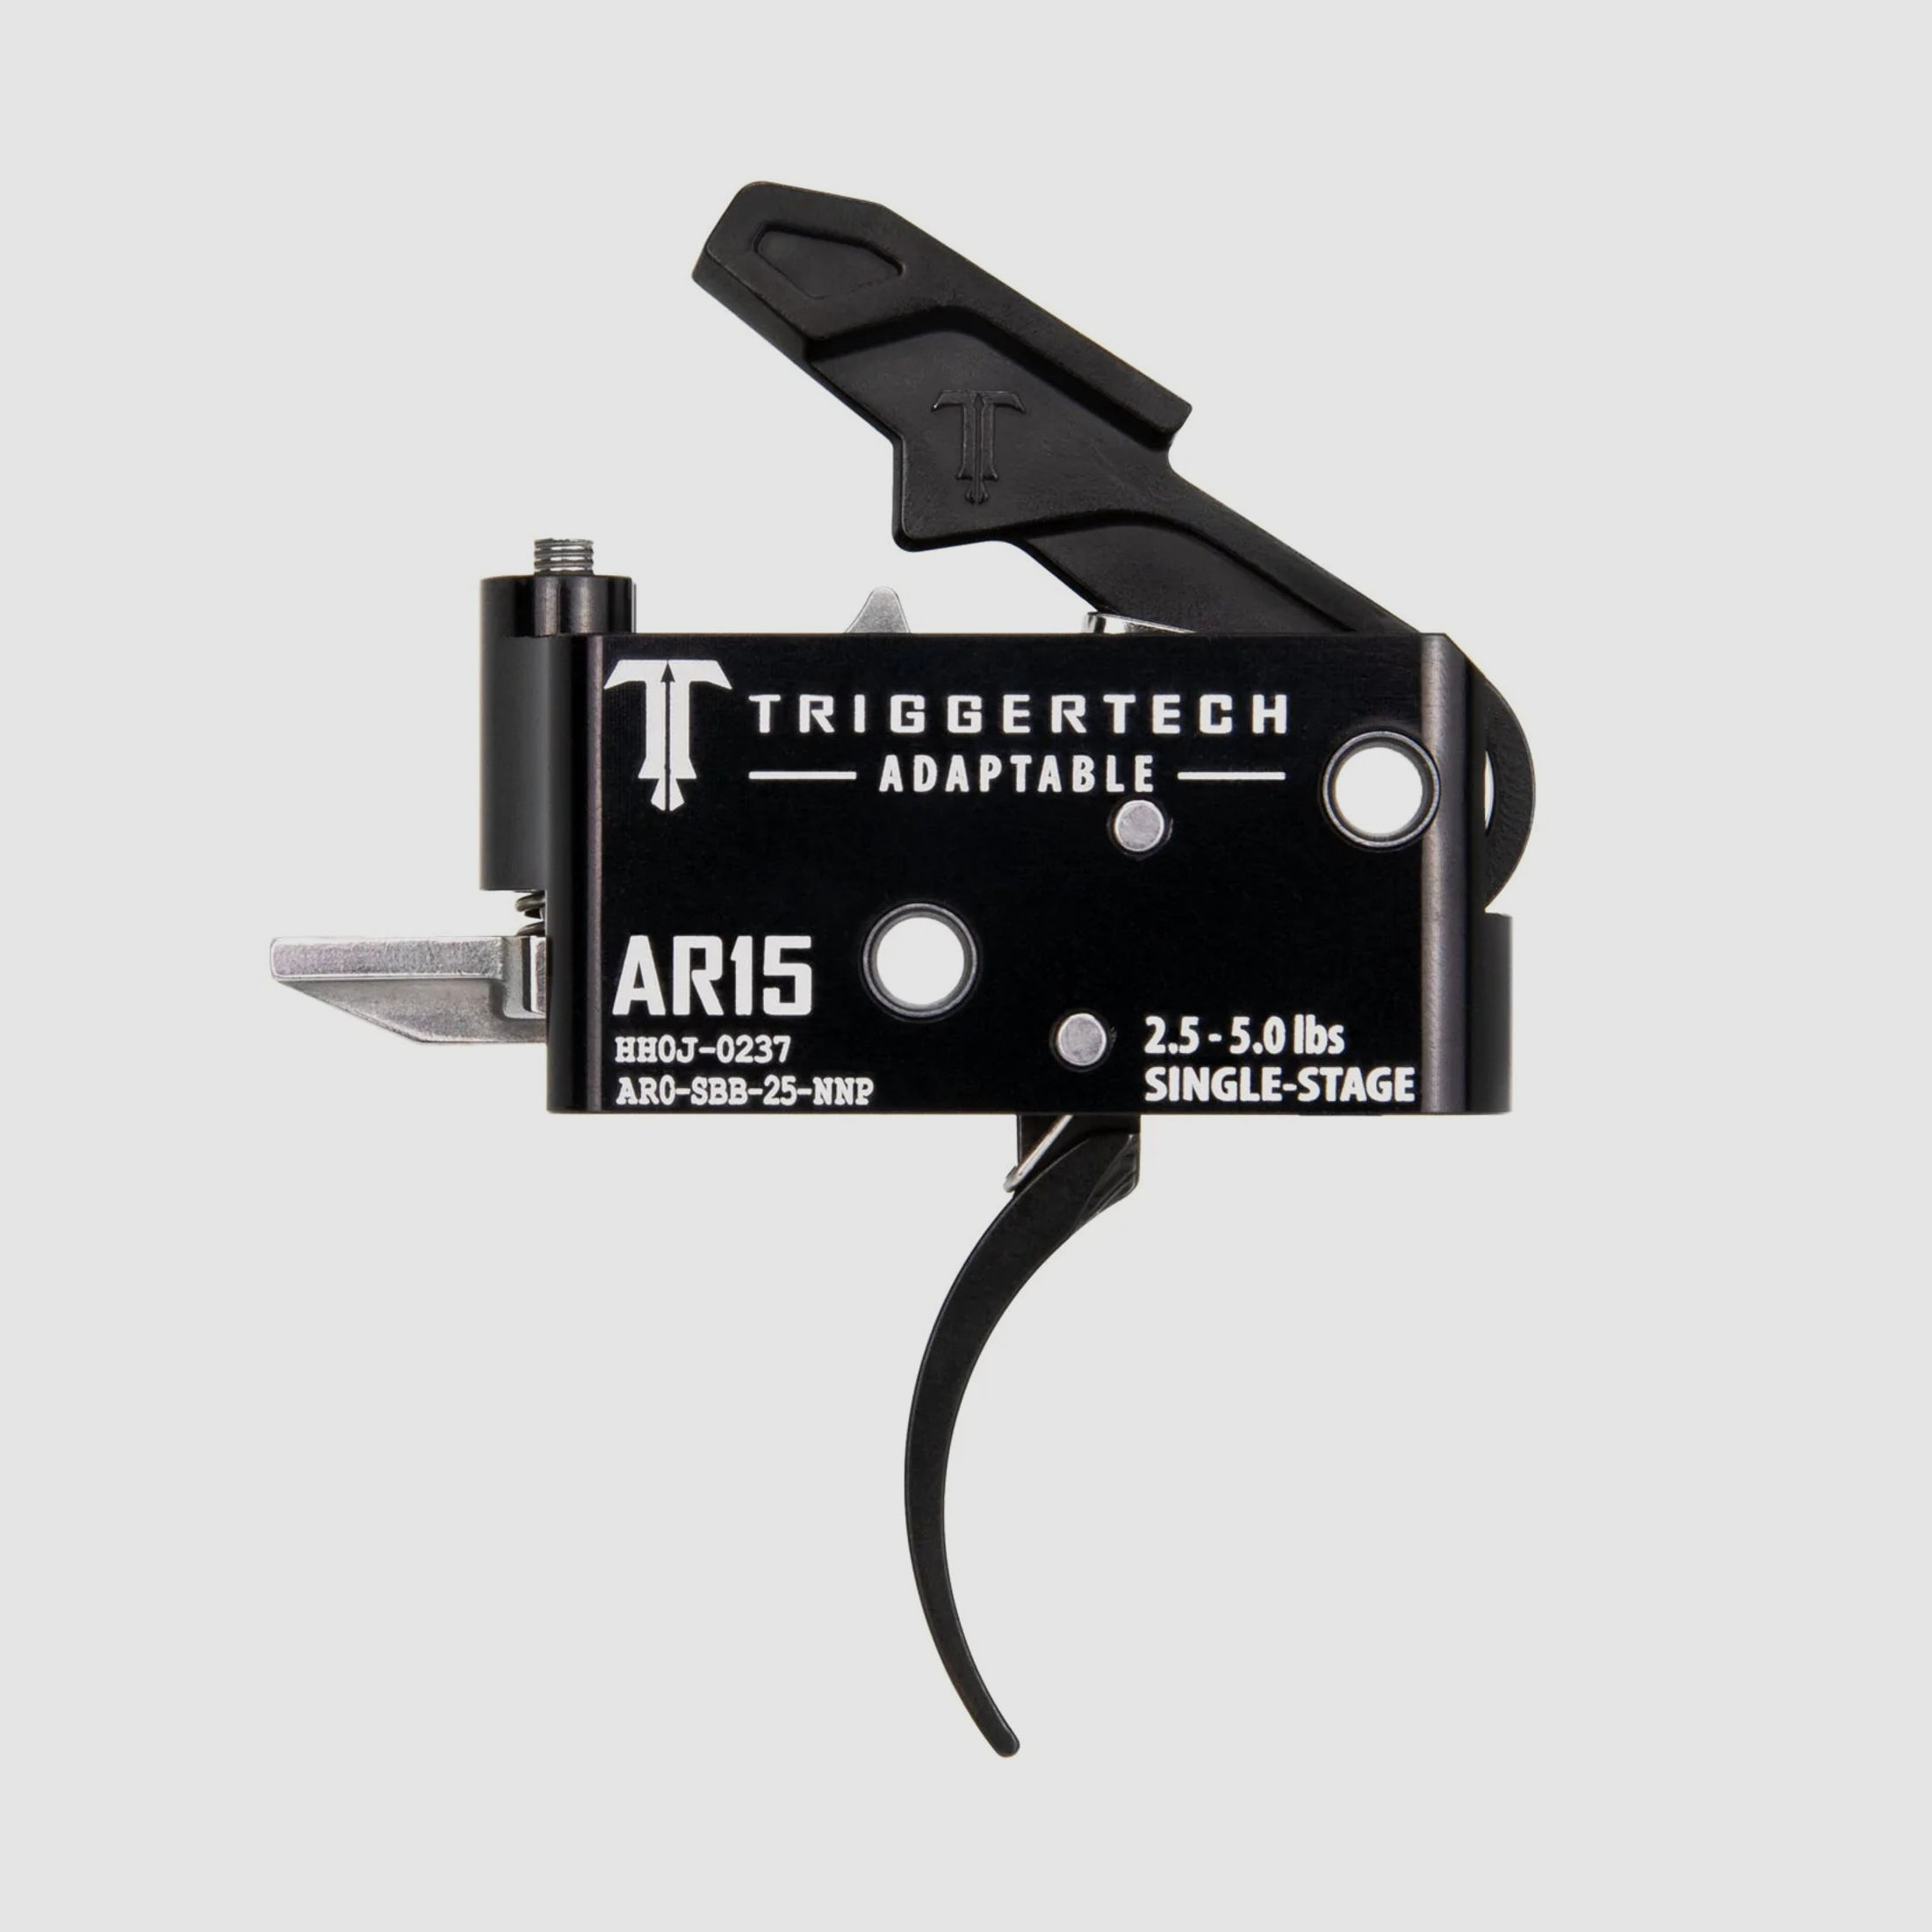 Triggertech AR15 Abzug Adaptable 